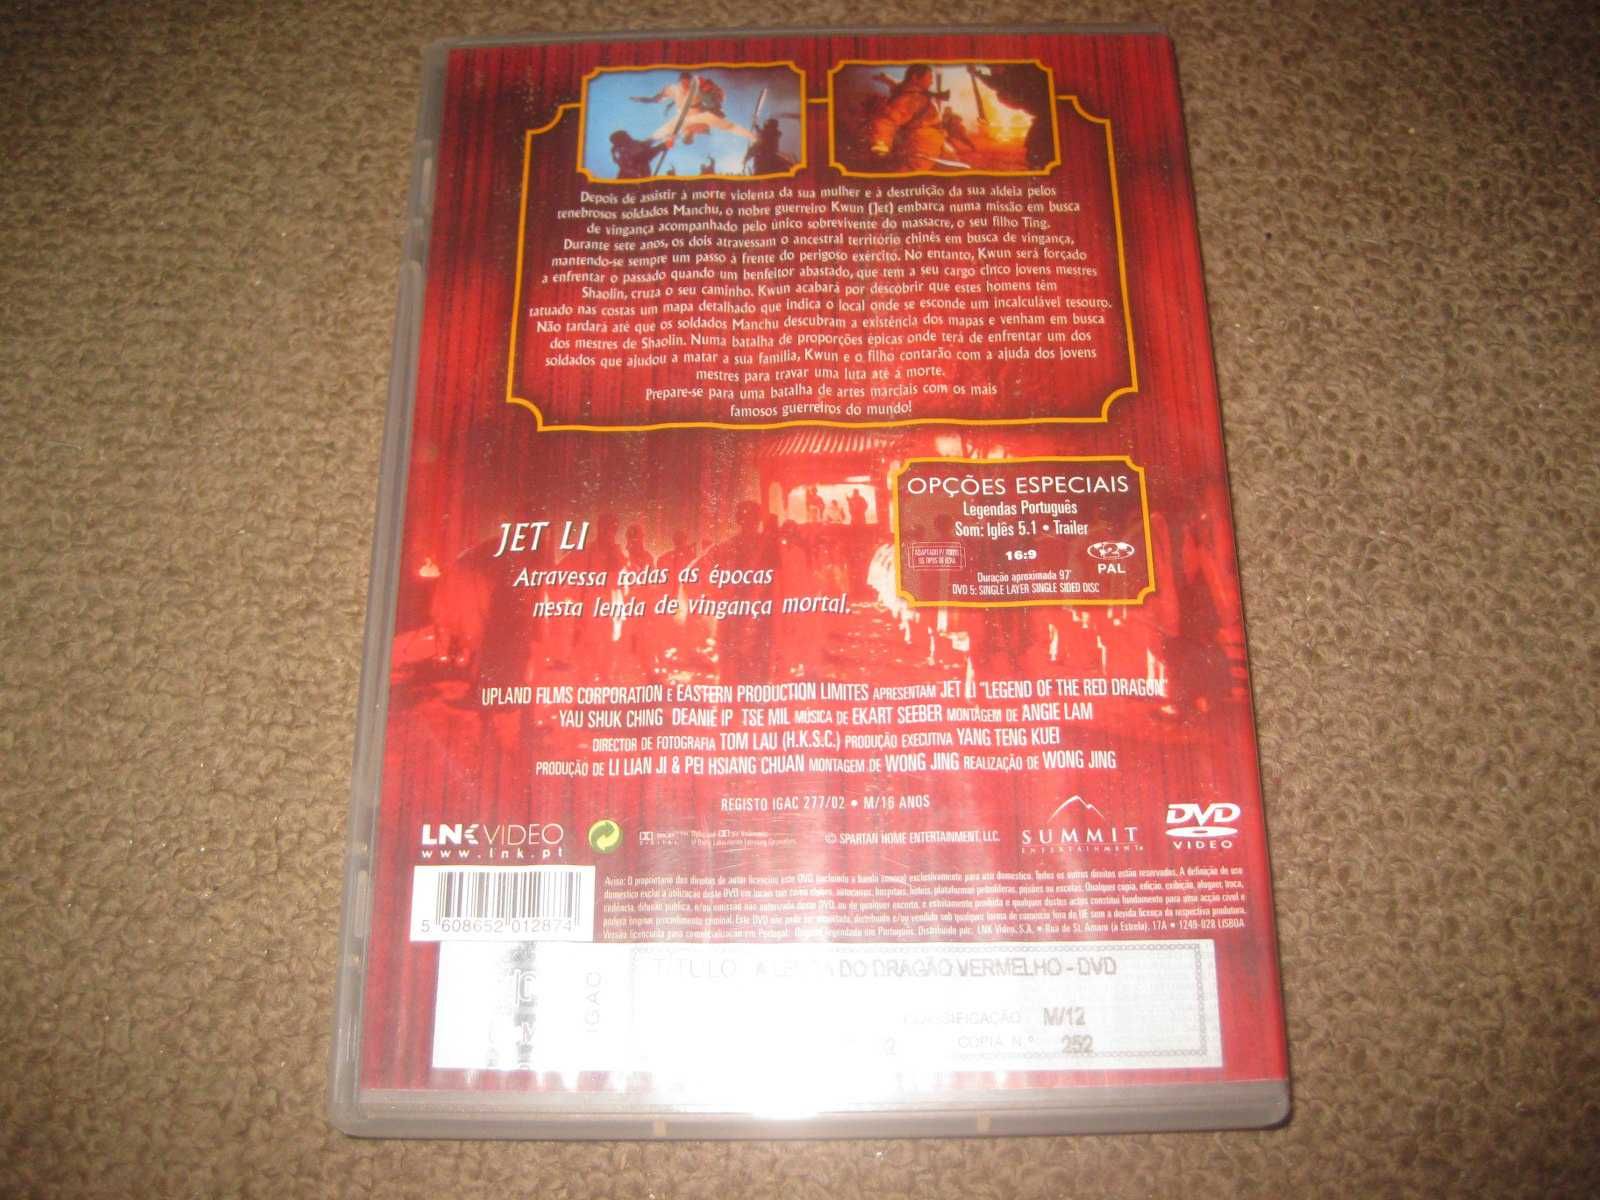 DVD "A Lenda do Dragão Vermelho" com Jet Li